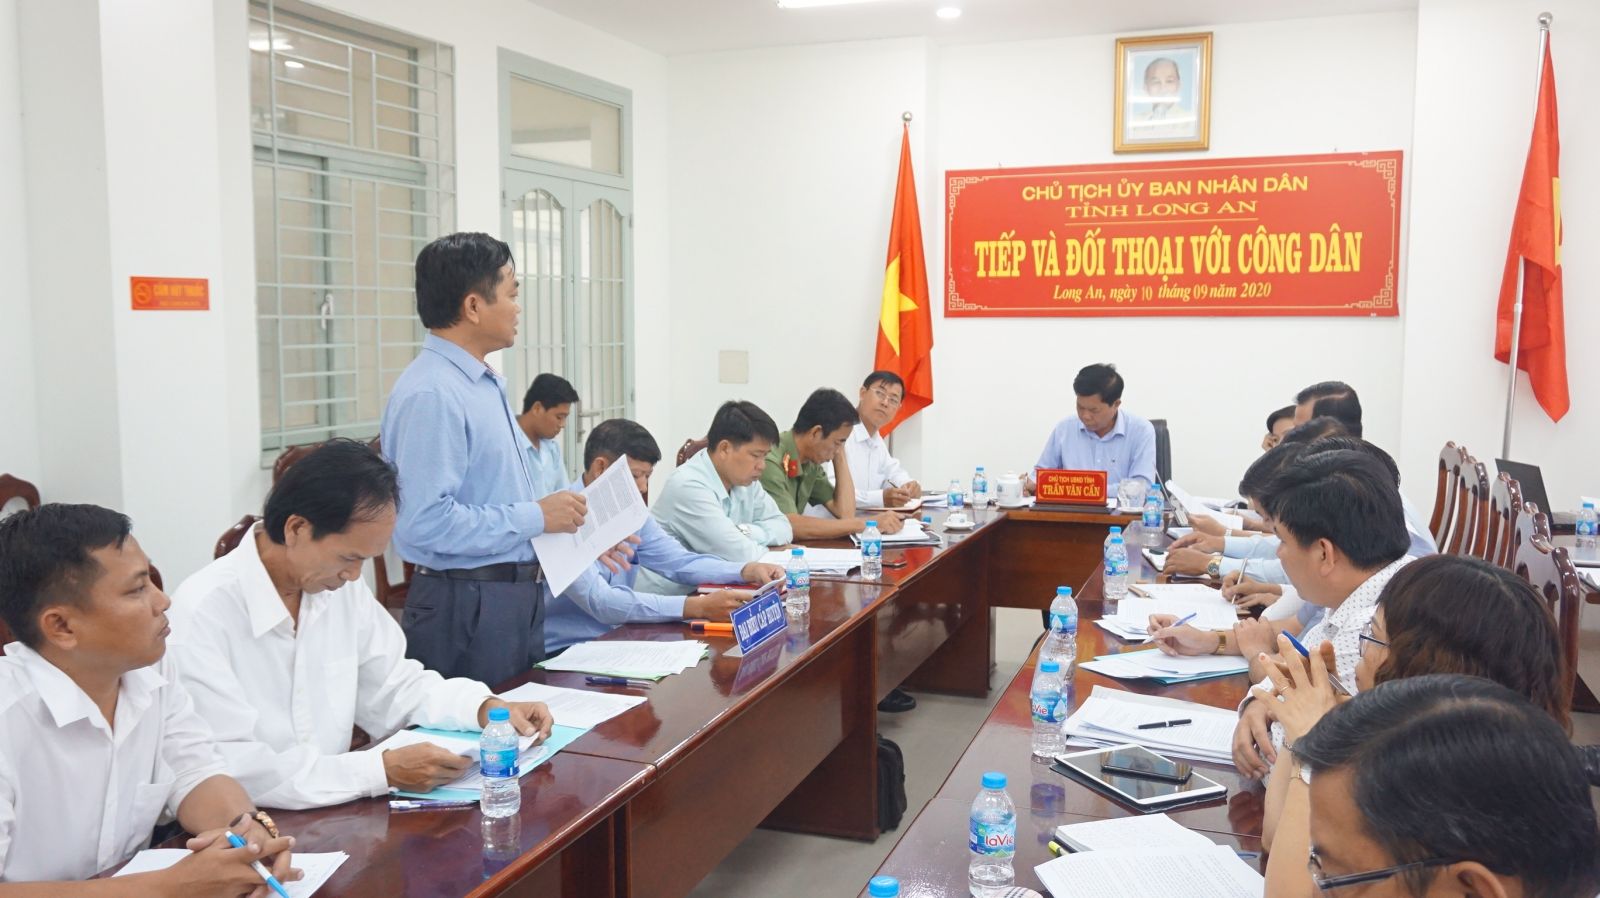 Chủ tịch UBND tỉnh - Trần Văn Cần trong buổi tiếp, đối thoại công dân